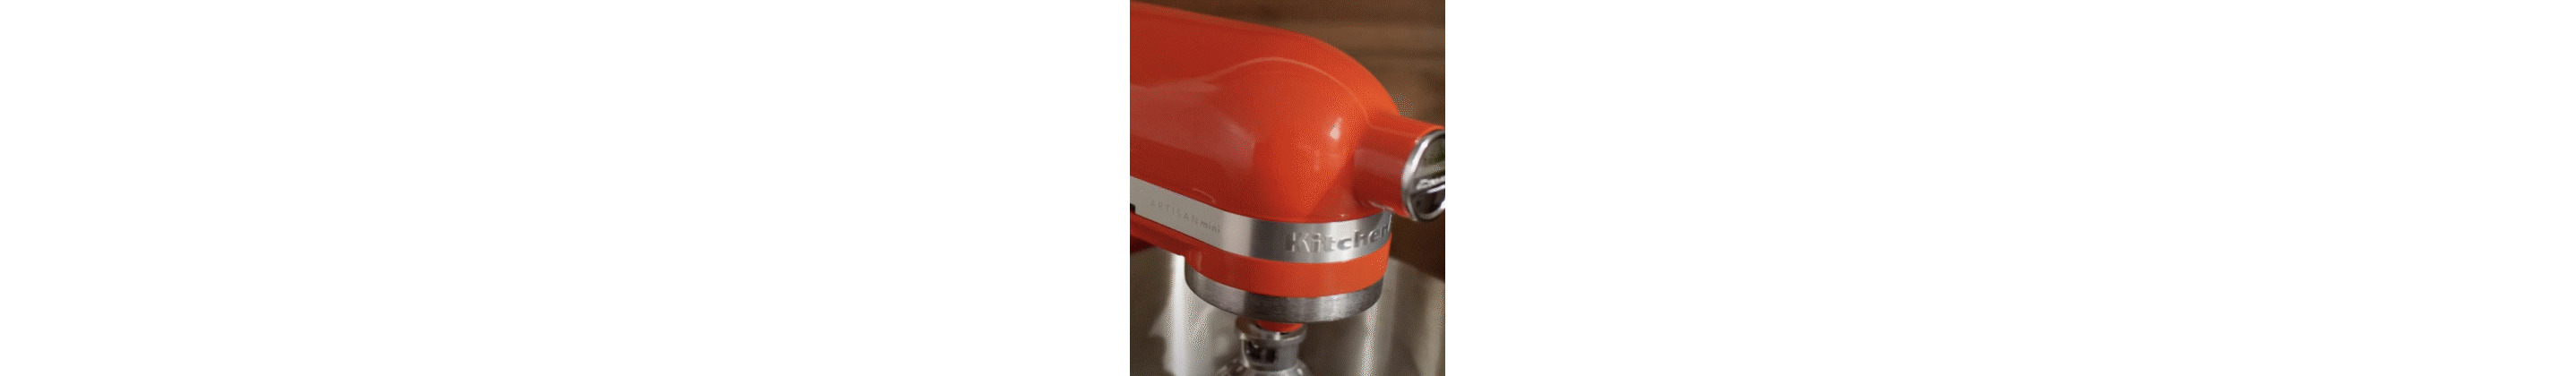 KitchenAid KSM85PBER 4.5 Quart Tilt-Head Stand Mixer - Empire Red